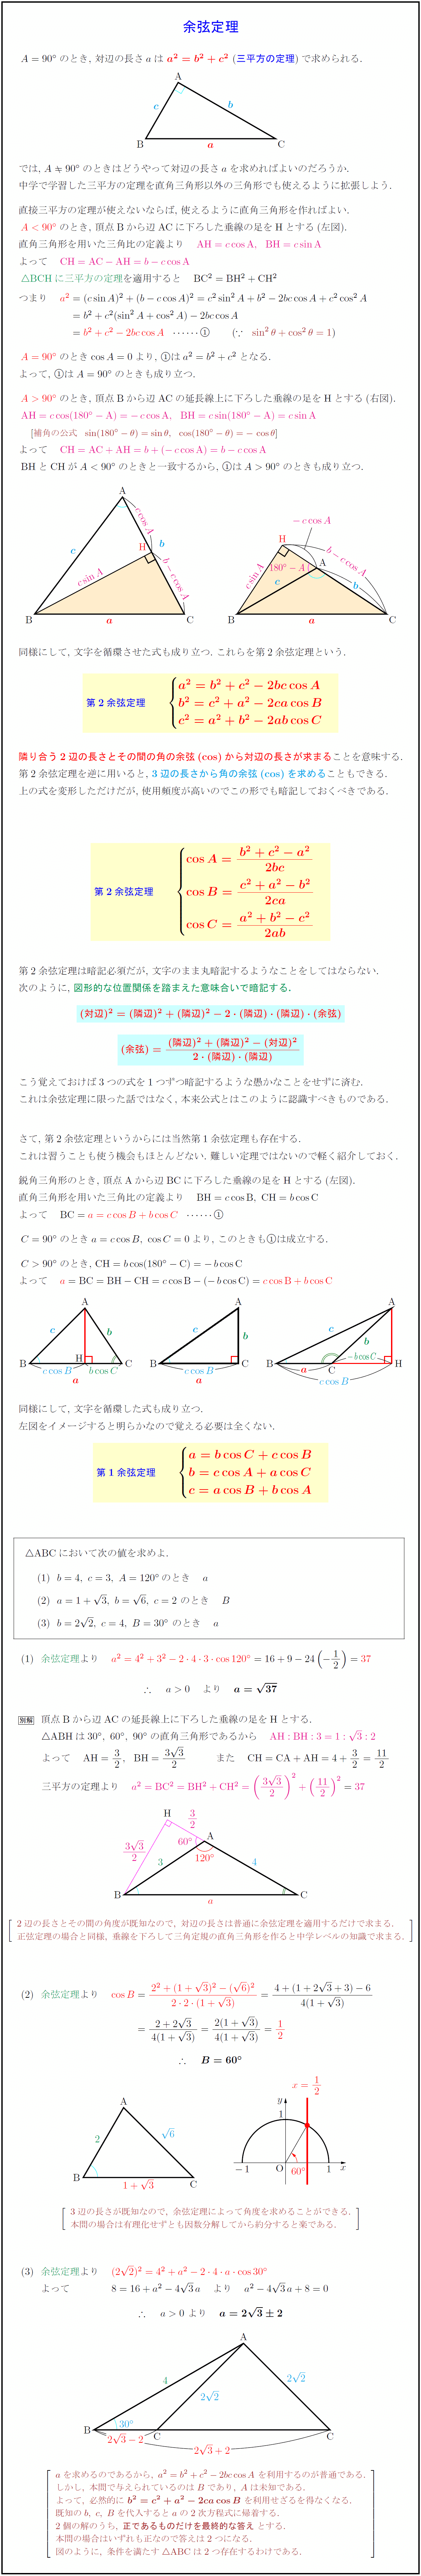 高校数学 第2余弦定理 三平方の定理の一般化 と第1余弦定理の証明と利用 受験の月